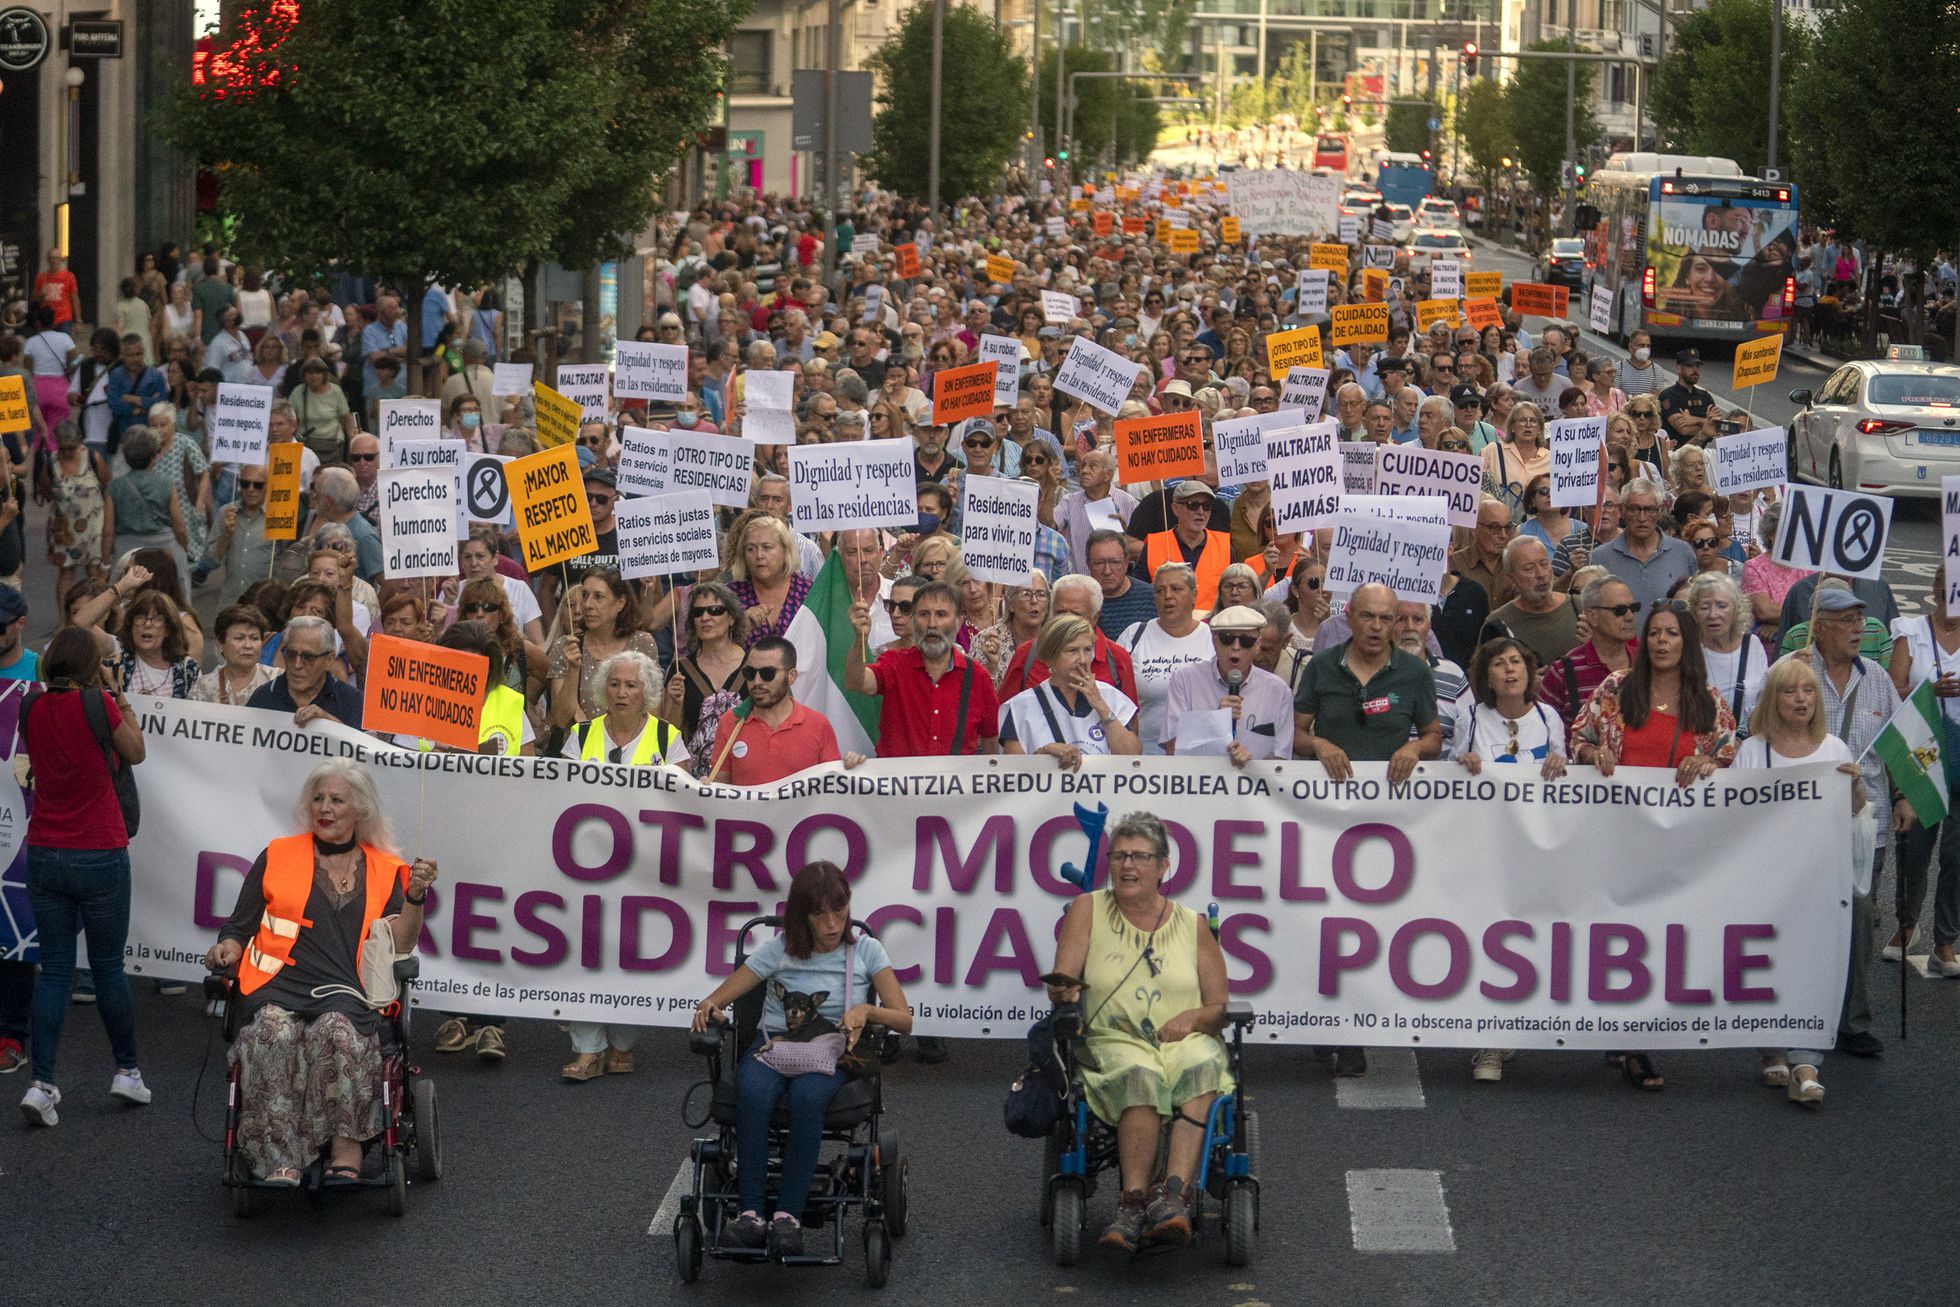 Madrid: Los familiares de residencias se manifiestan para exigir un nuevo modelo: “¡Basta ya!”